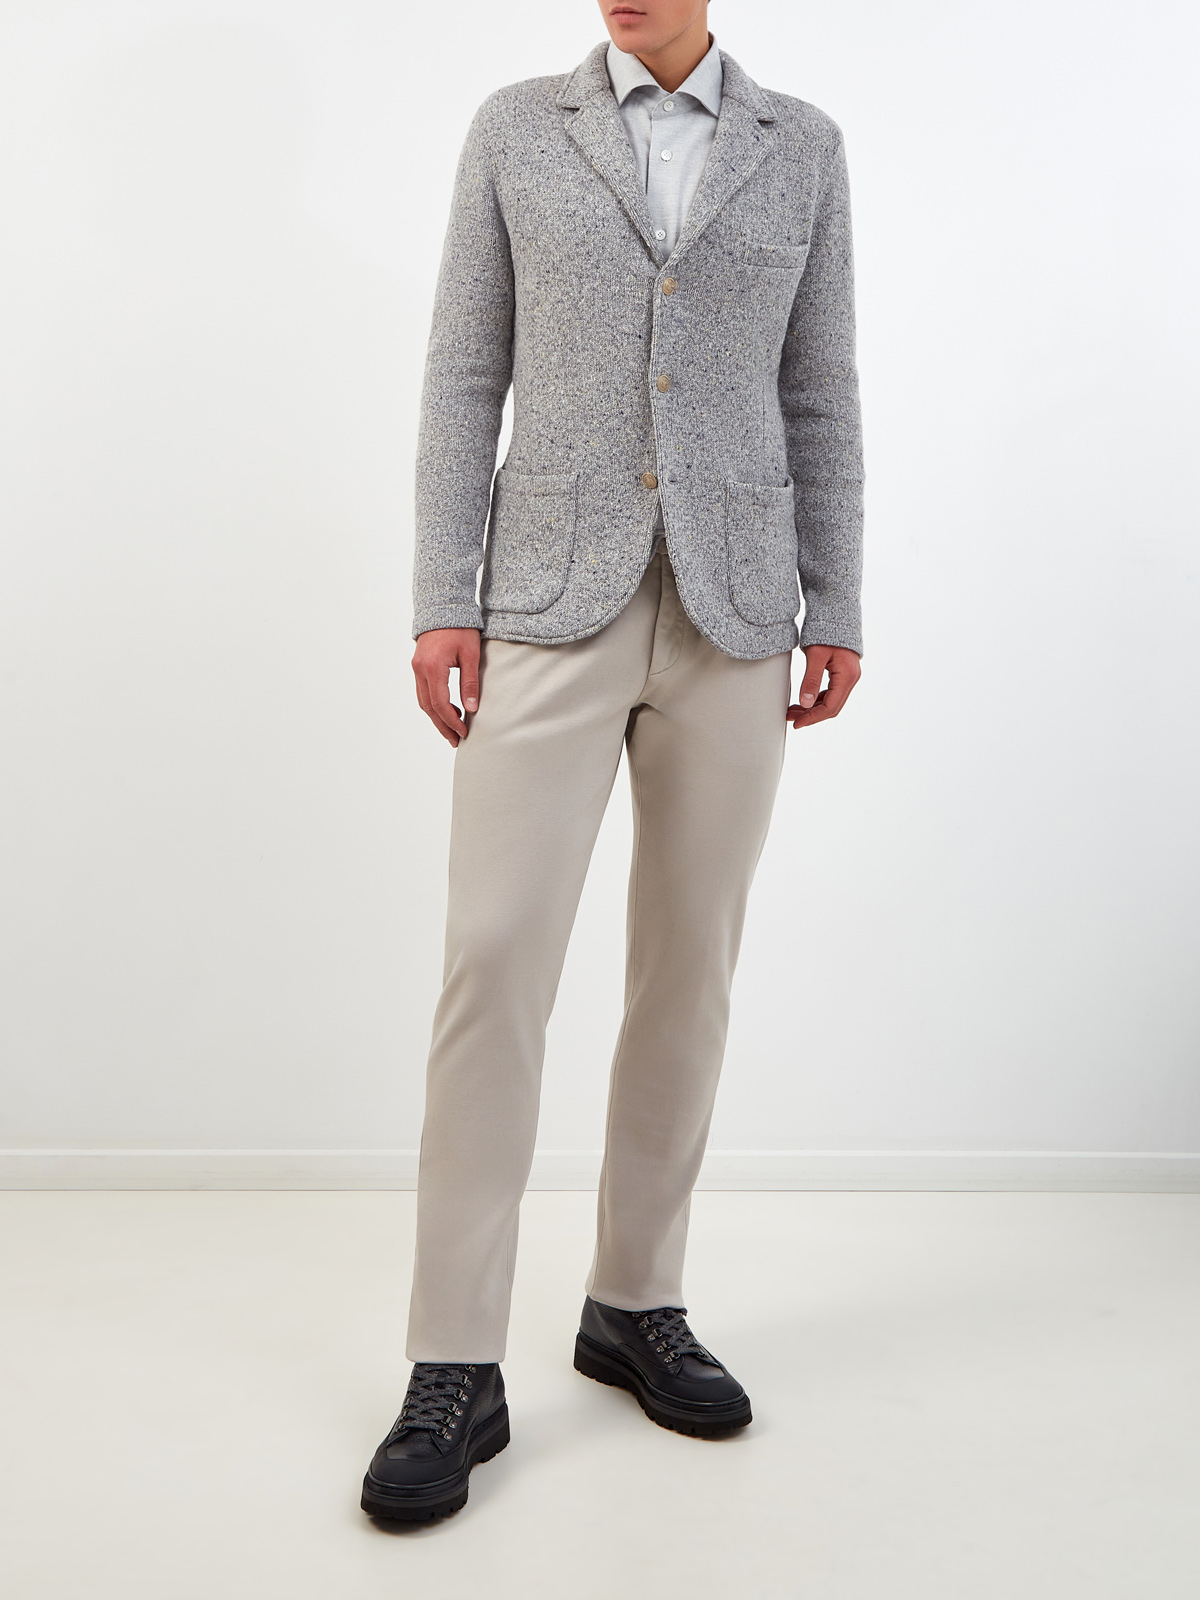 Хлопковые брюки в стиле sprezzatura с поясом на кулиске ELEVENTY, цвет серый, размер 48;50;52;54 - фото 2